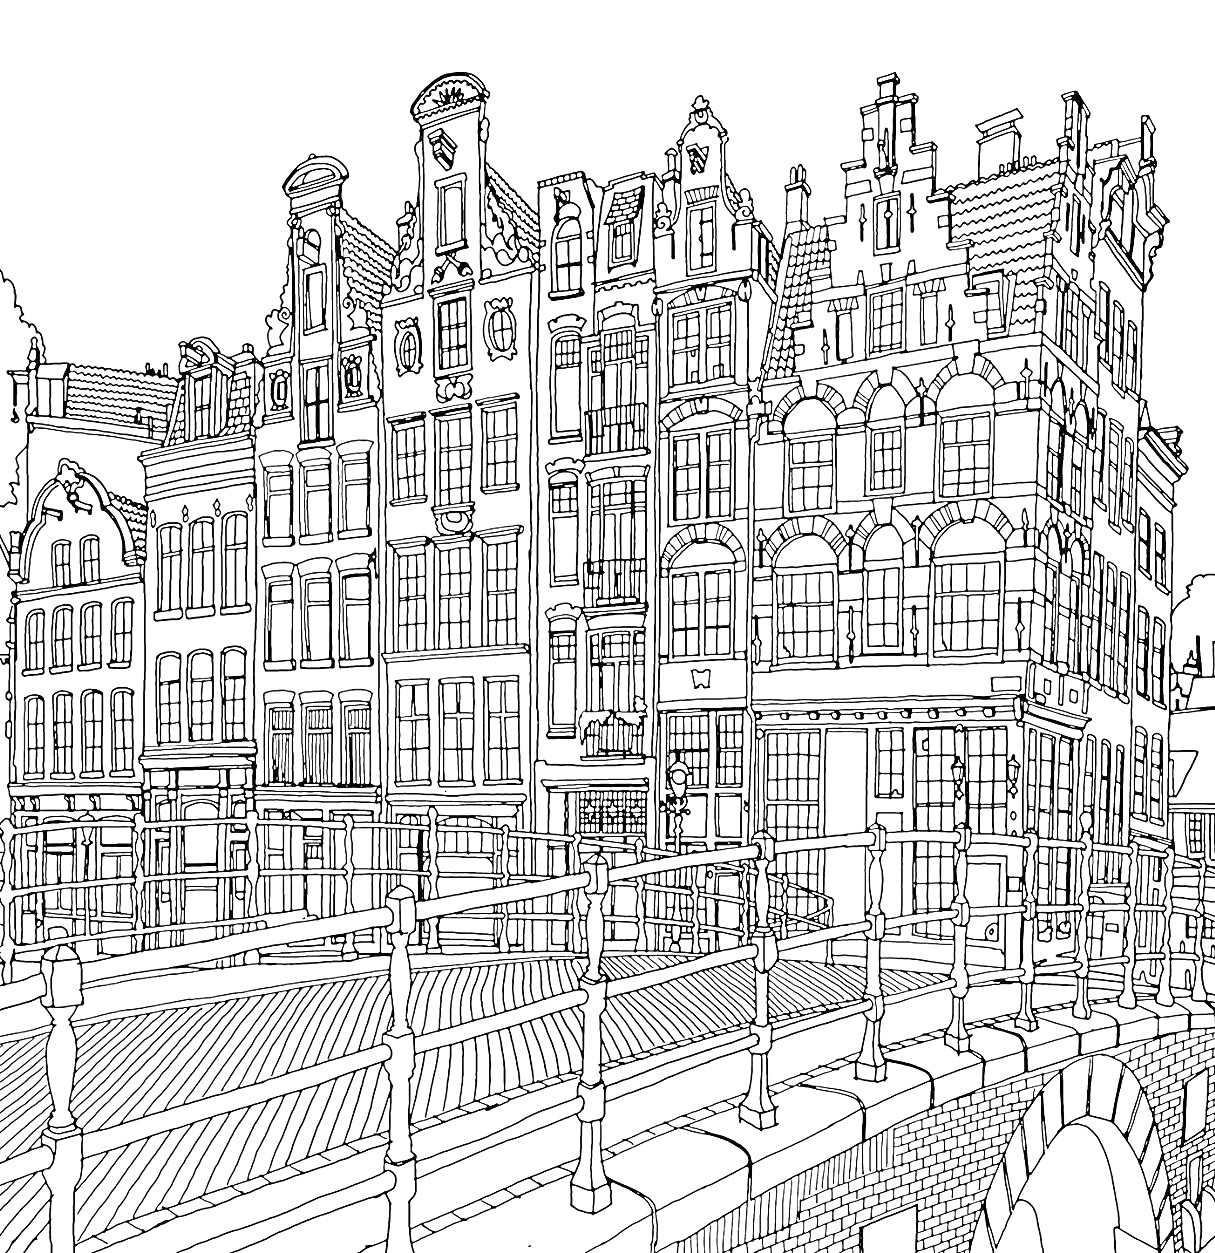 Город с кирпичными зданиями и мостом через канал, многоэтажные дома с окнами и деталями фасадов в голландском стиле